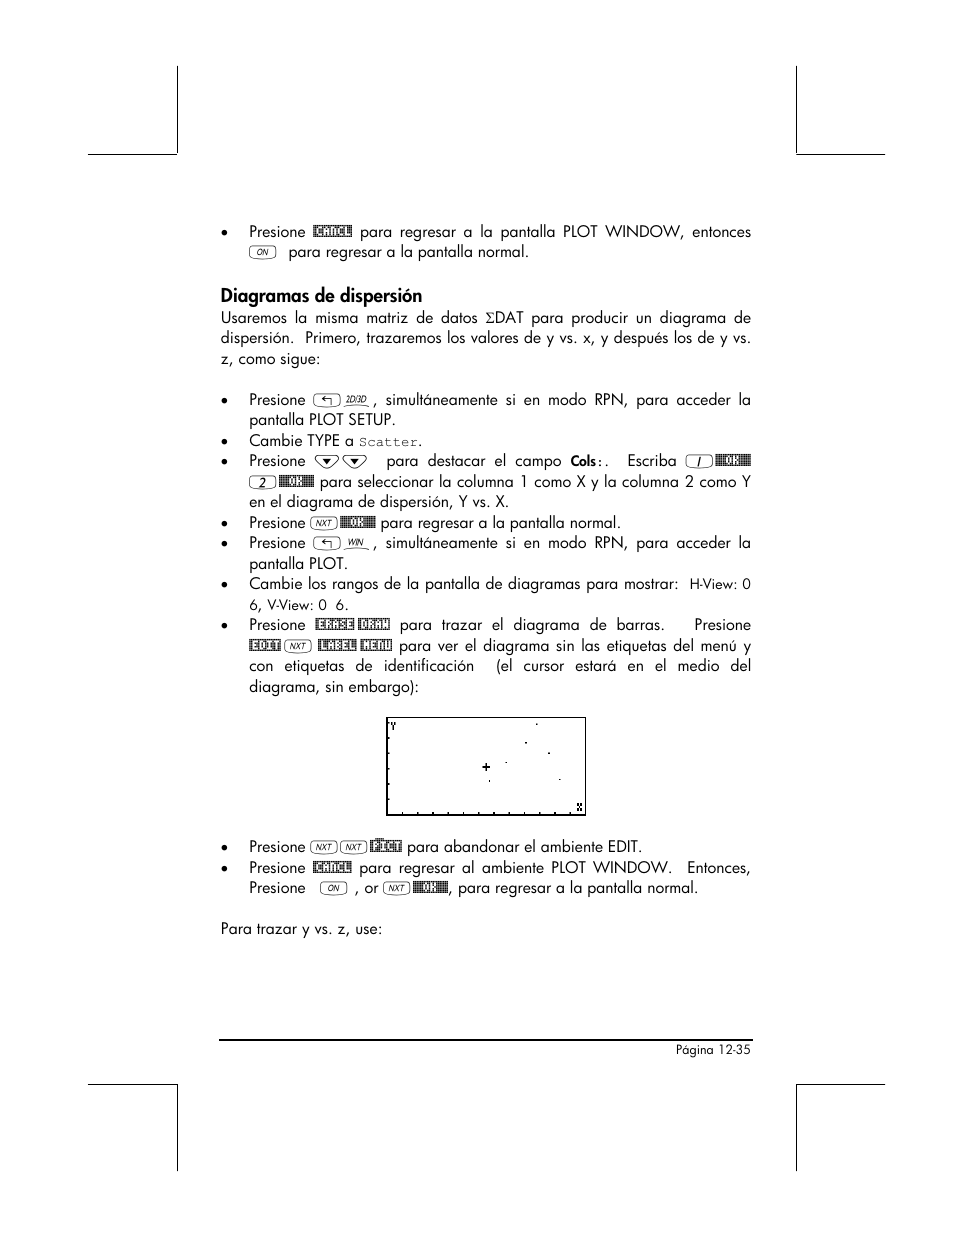 Diagramas de dispersion | HP Calculadora Gráfica HP 49g Manual del usuario | Página 424 / 891